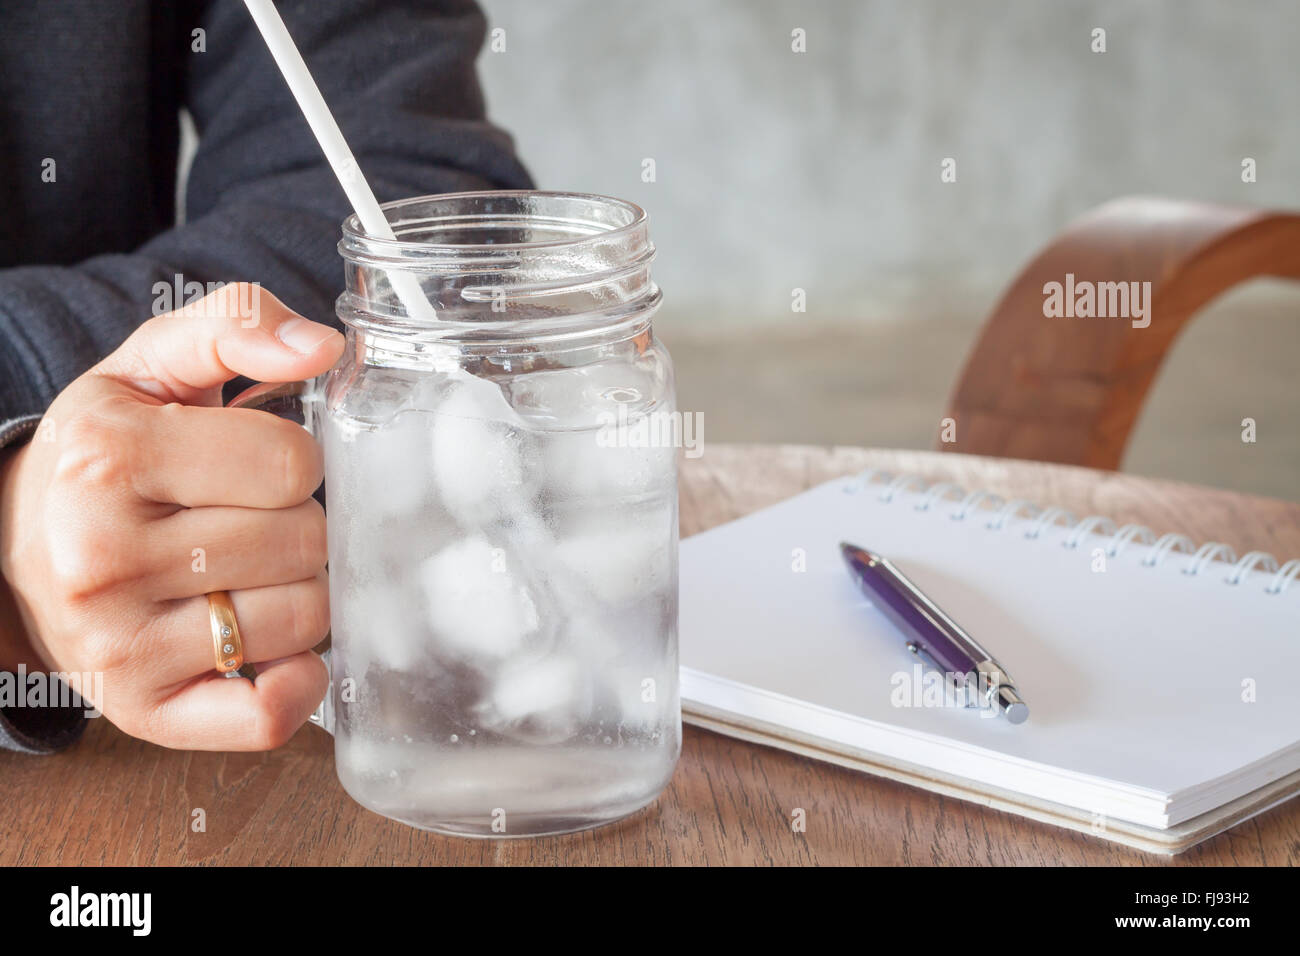 La main de femme tenant un verre d'eau froide, stock photo Banque D'Images